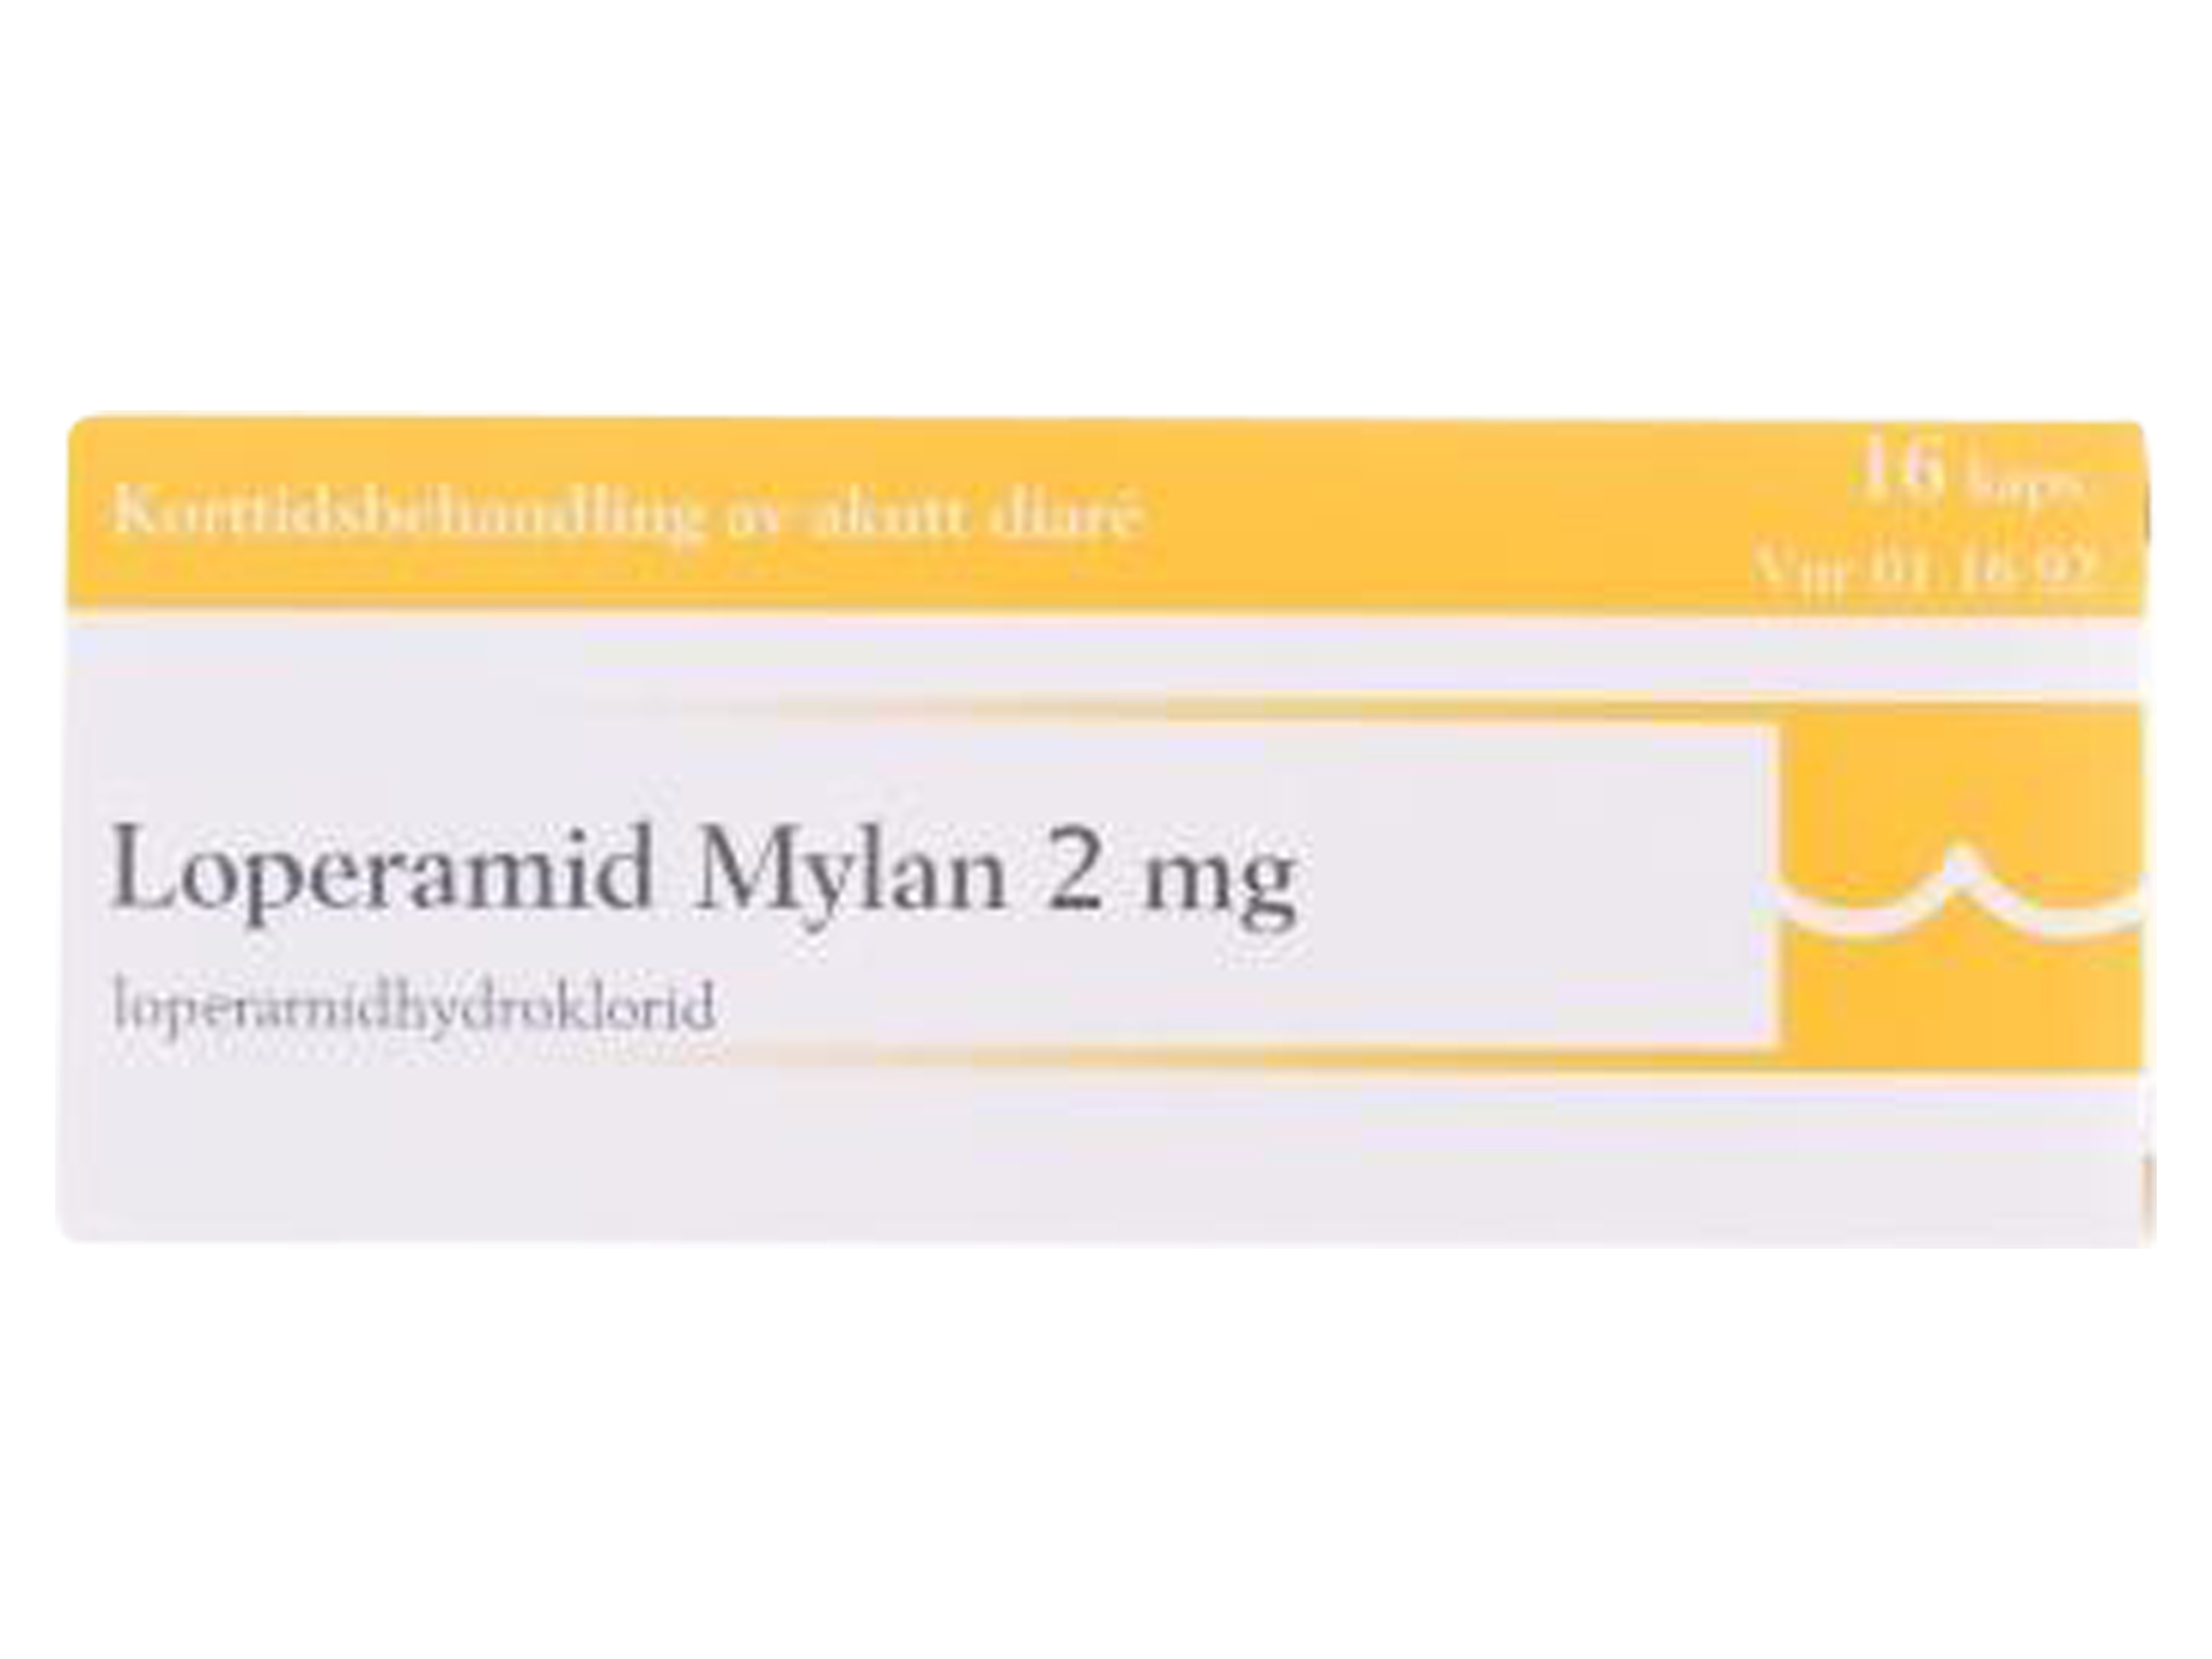 Loperamid Mylan kapsler 2 mg, 16 kapsler